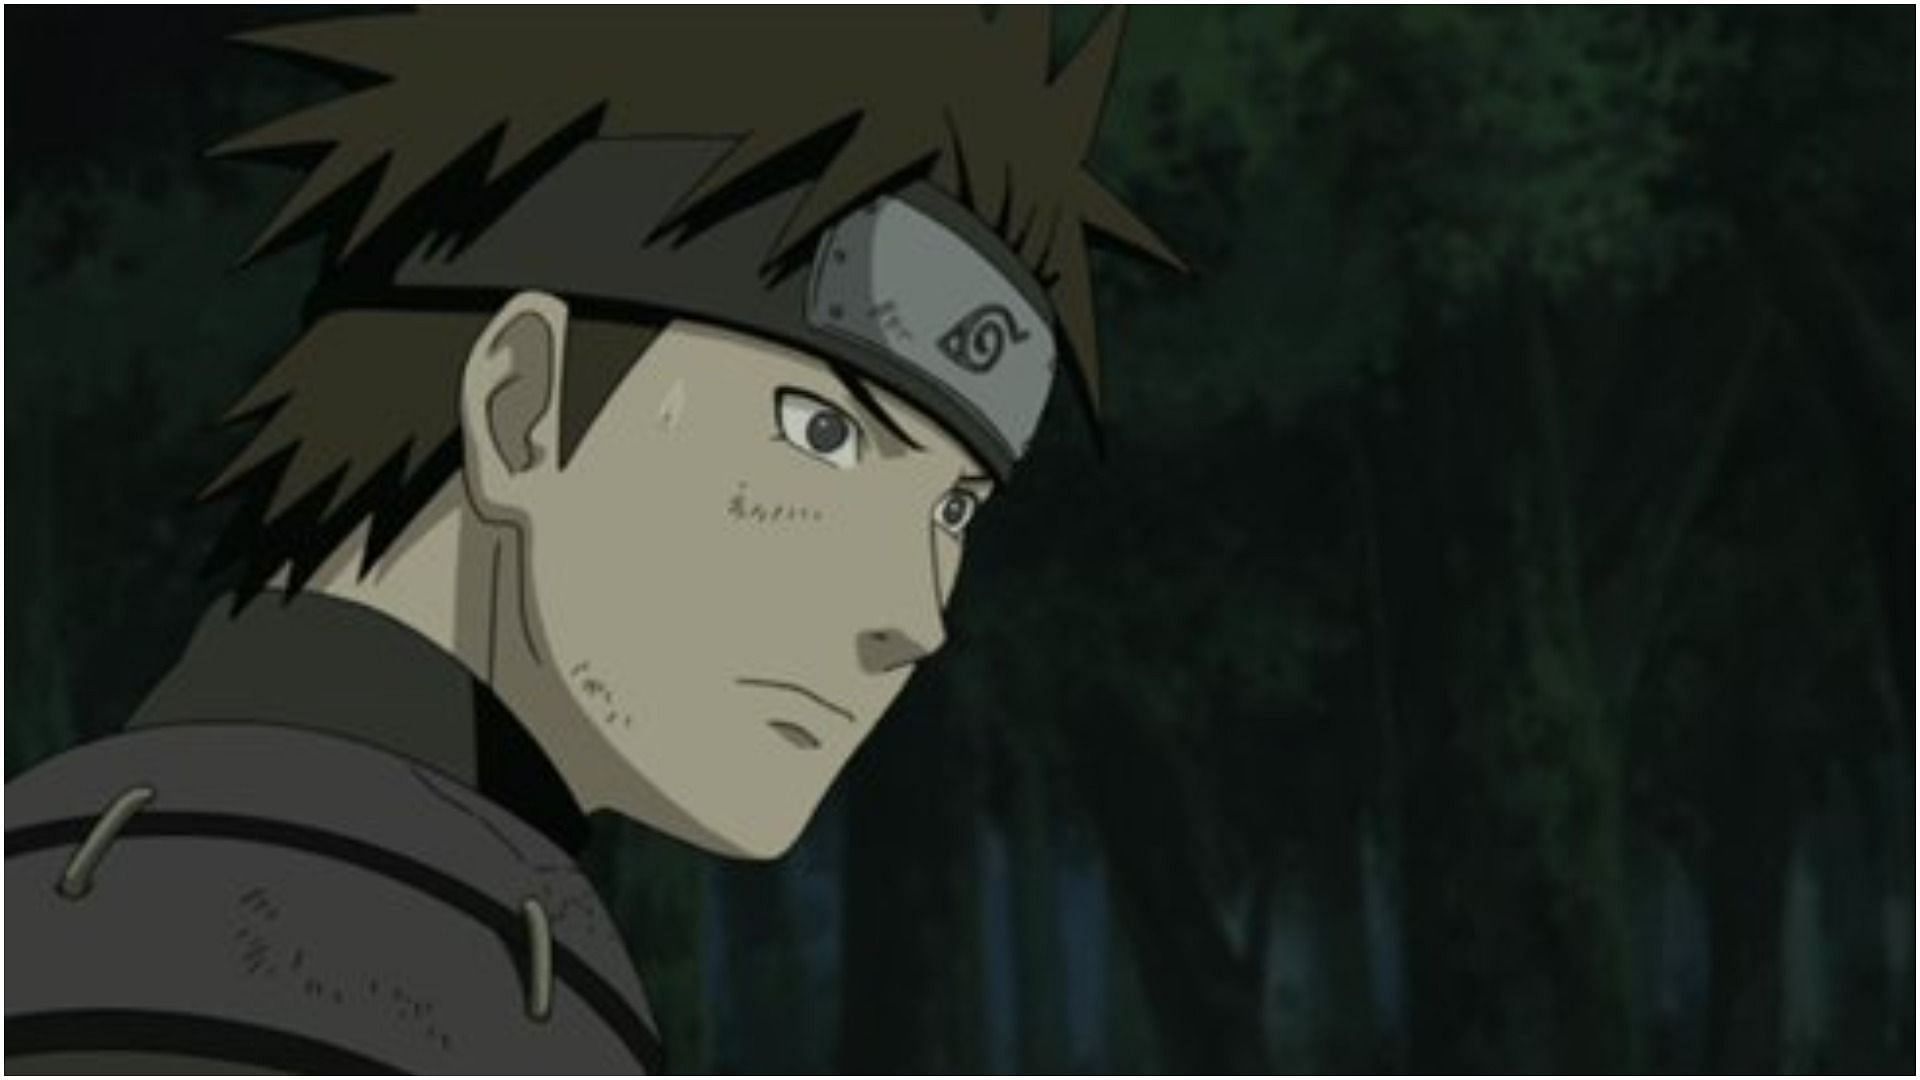 Young Hiruzen as seen in Naruto (Image via Studio Pierrot)